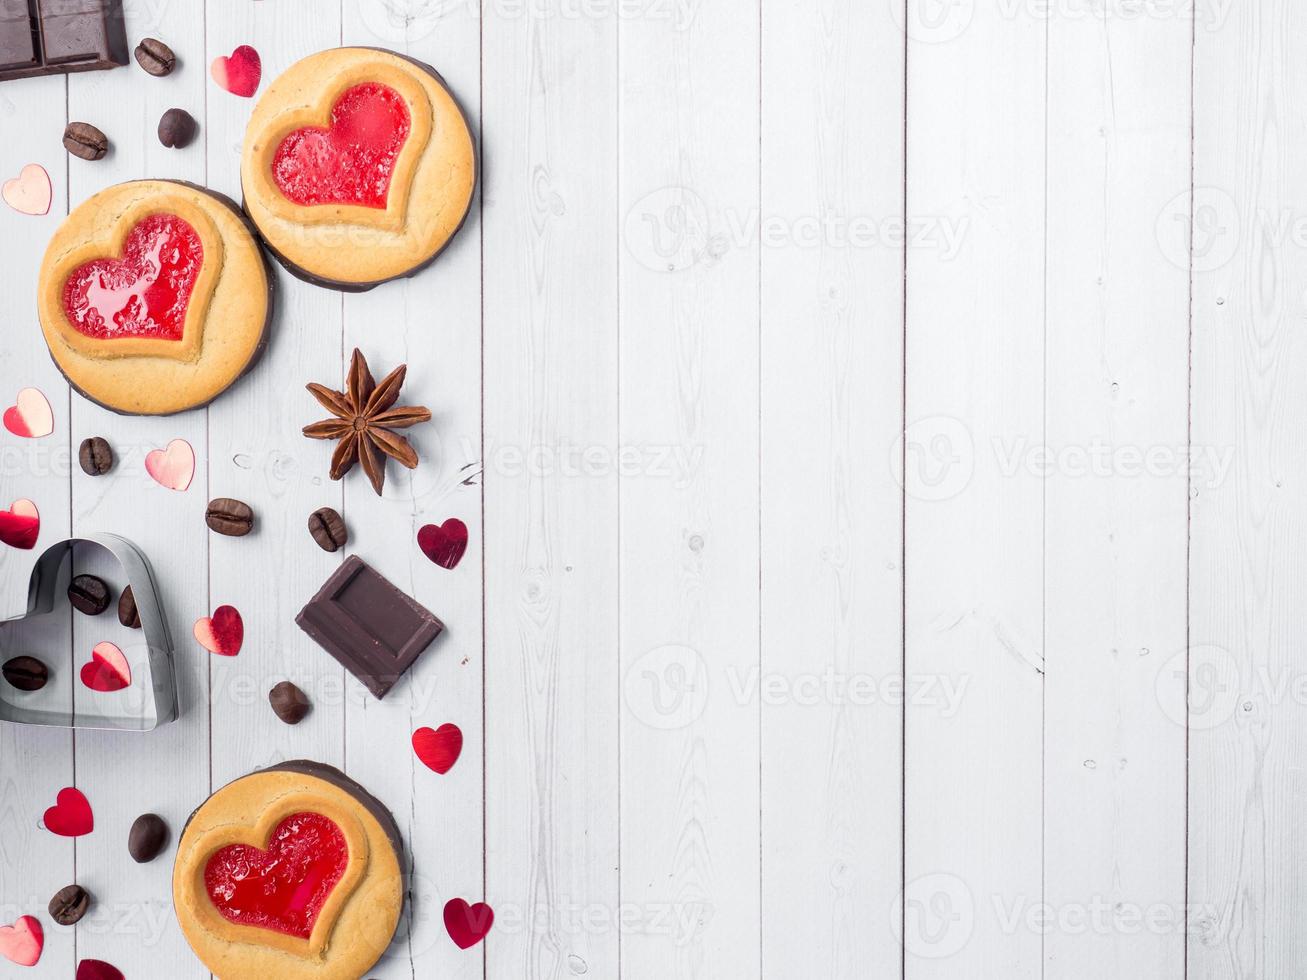 galletas caseras con mermelada roja corazón día de san valentín café y chocolate anís estrellado copia espacio plano foto